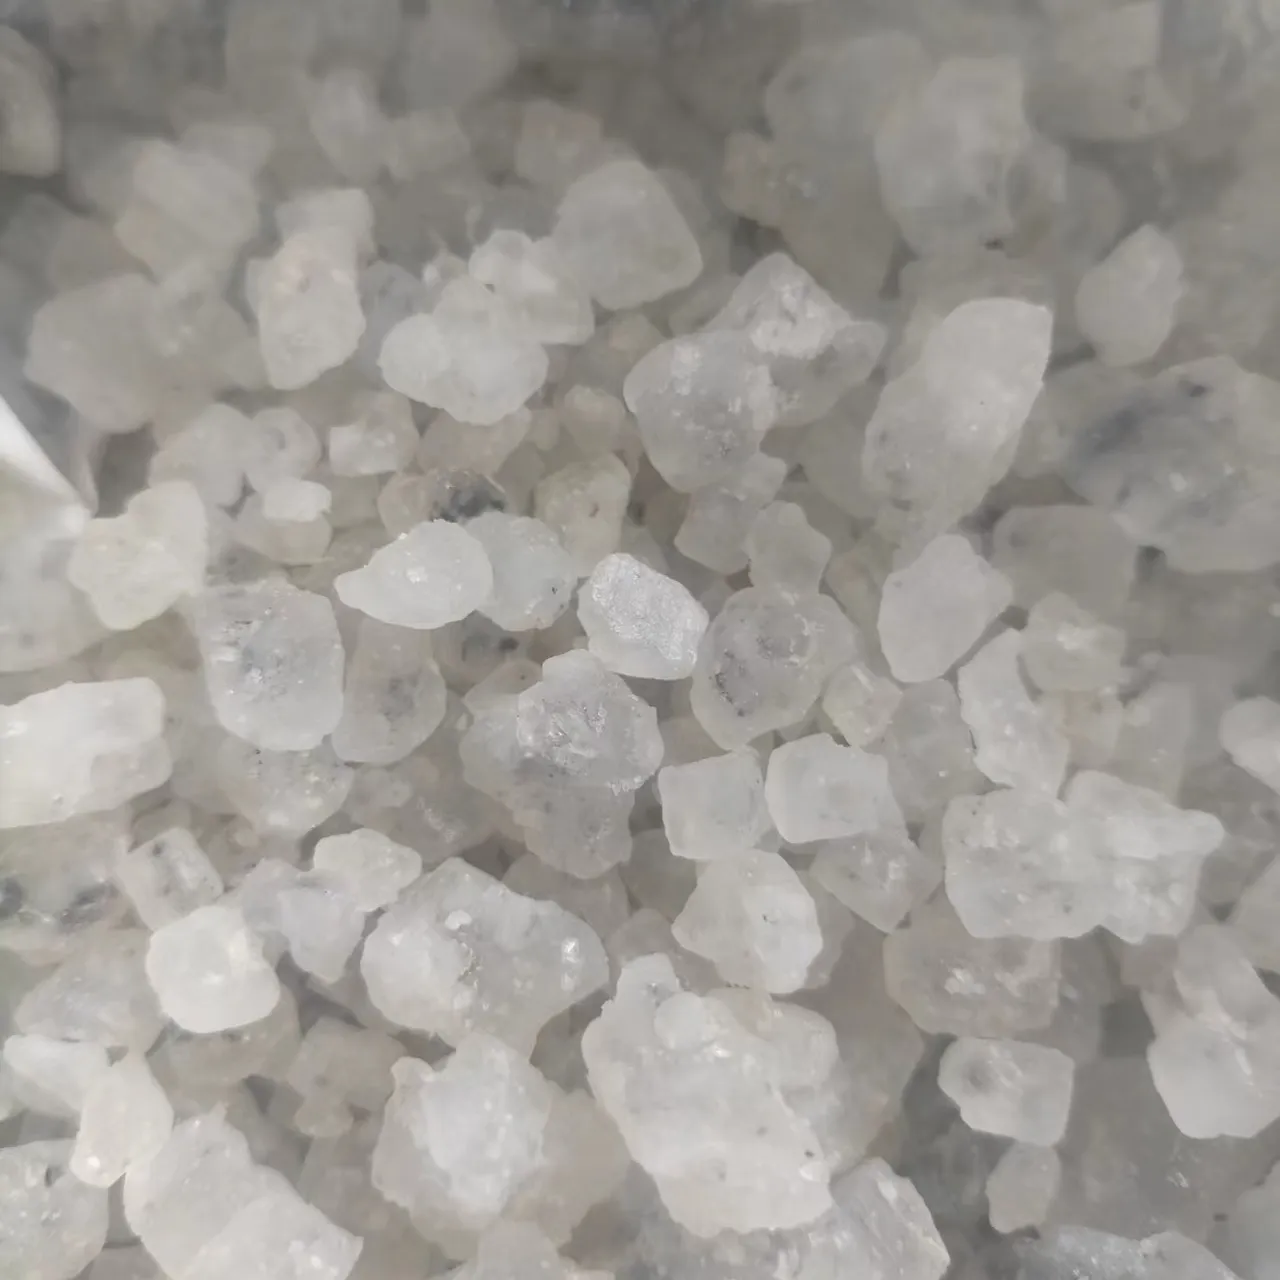 الصين عالية الجودة nacl 96 كلوريد الصوديوم بالجملة للصناعة الصف صناعة الملح هيدروكلوريد الصوديوم